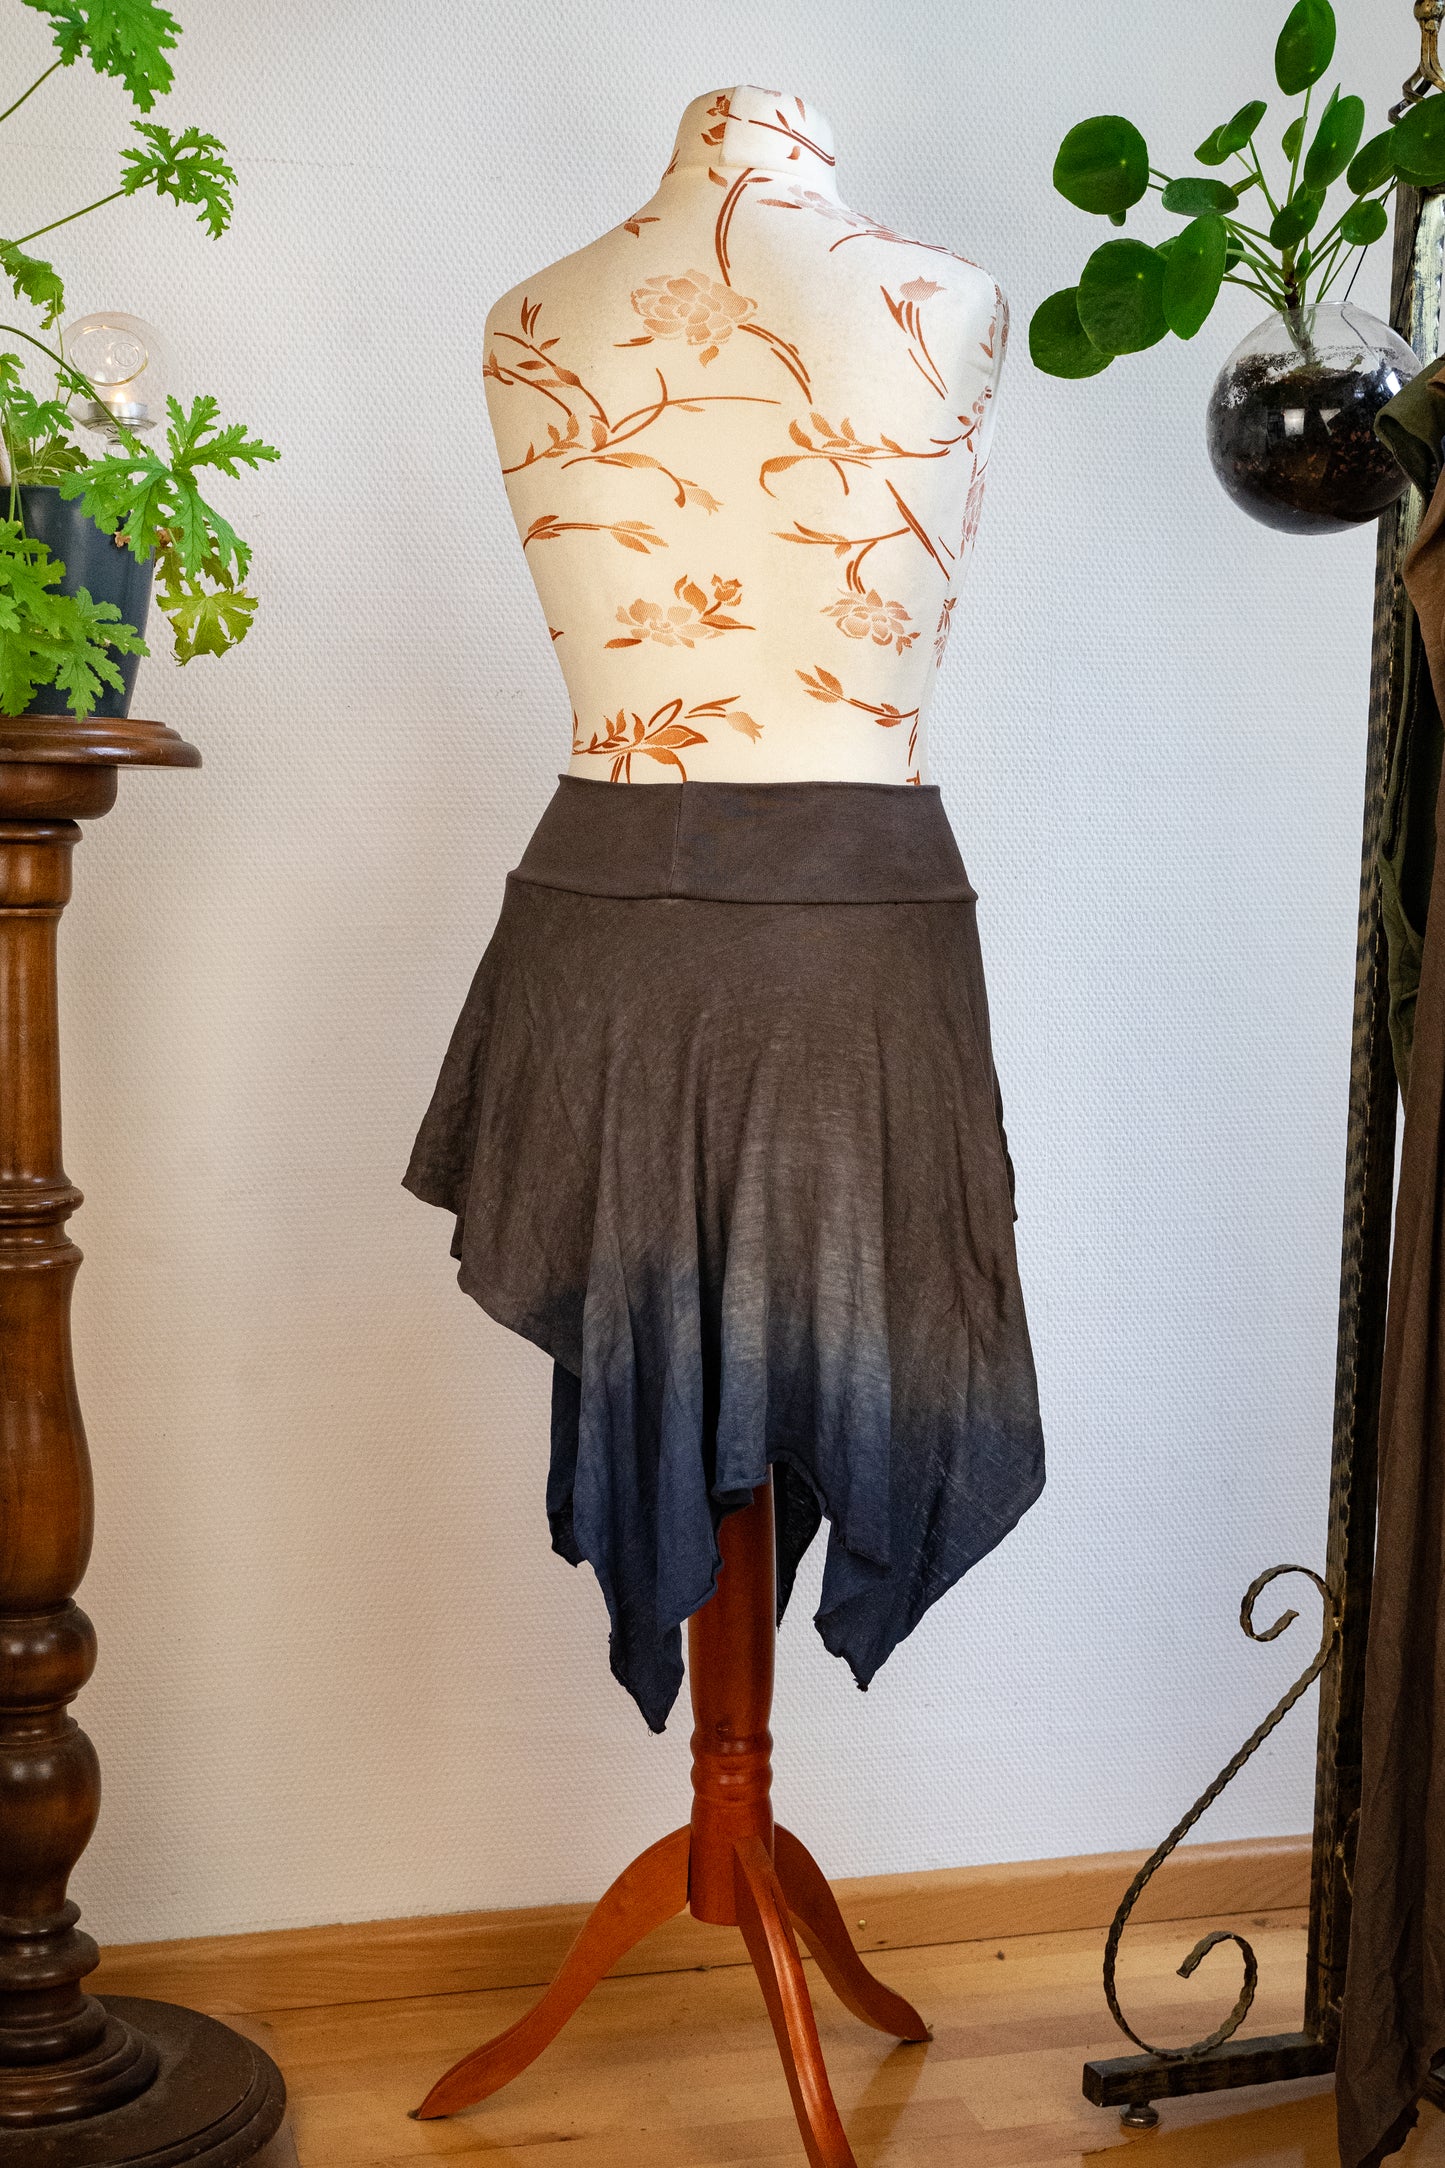 Size 34-38 - Hemp jersey skirt